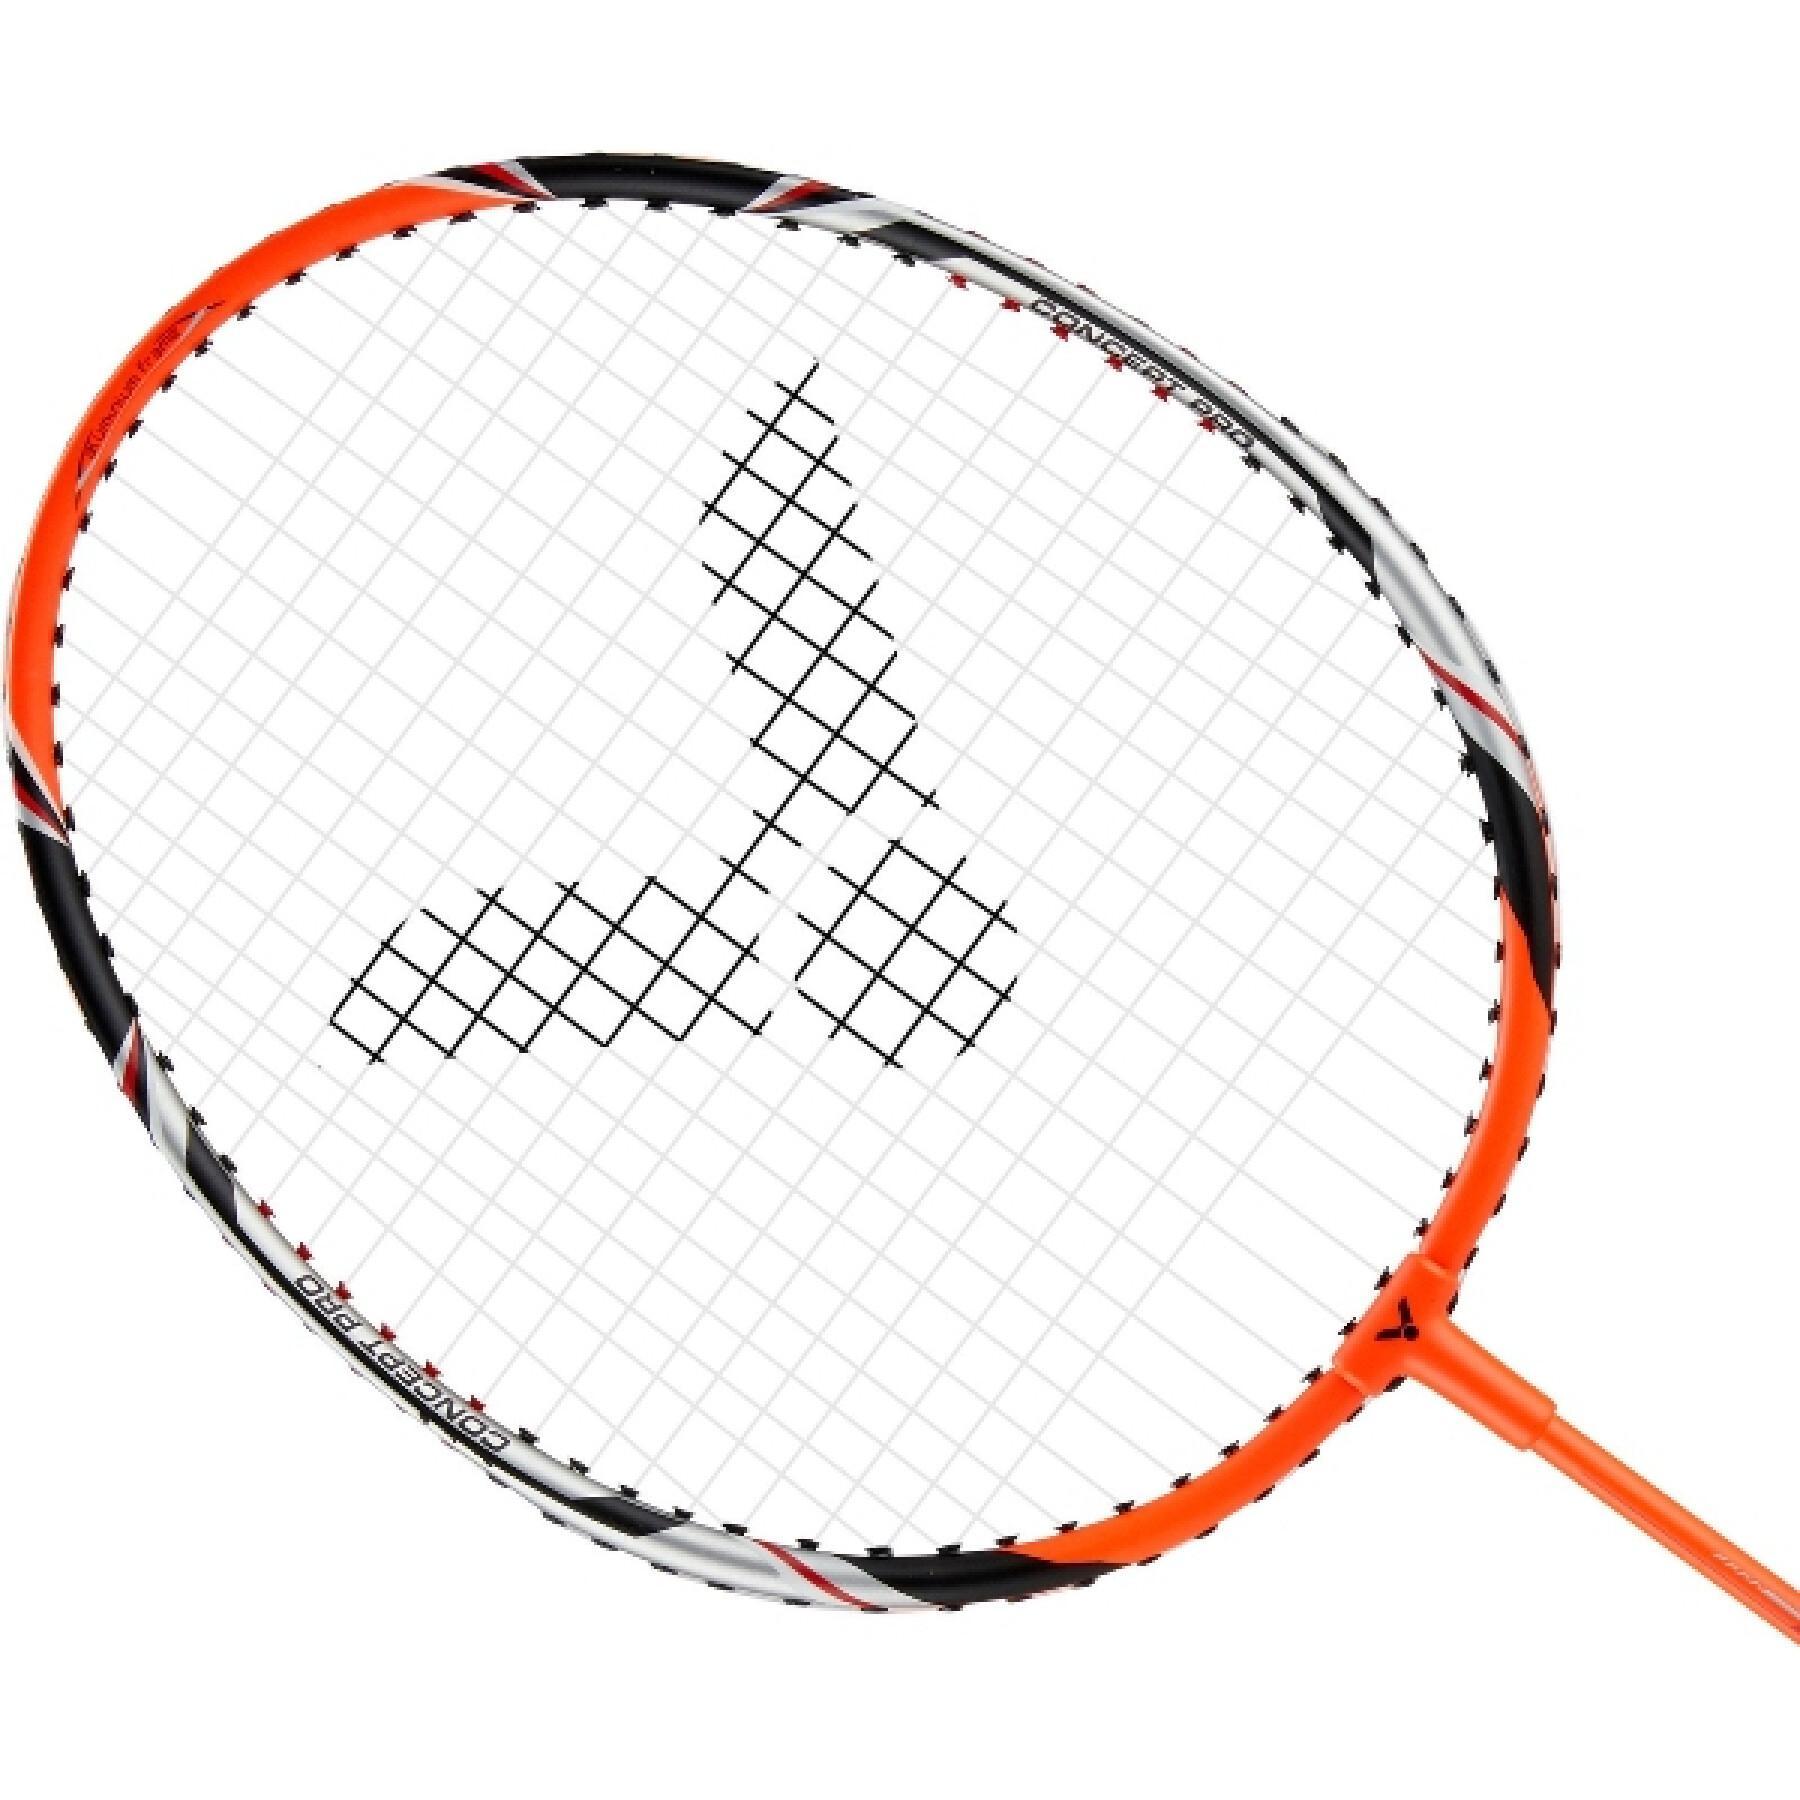 Raquete de Badminton Victor Pro